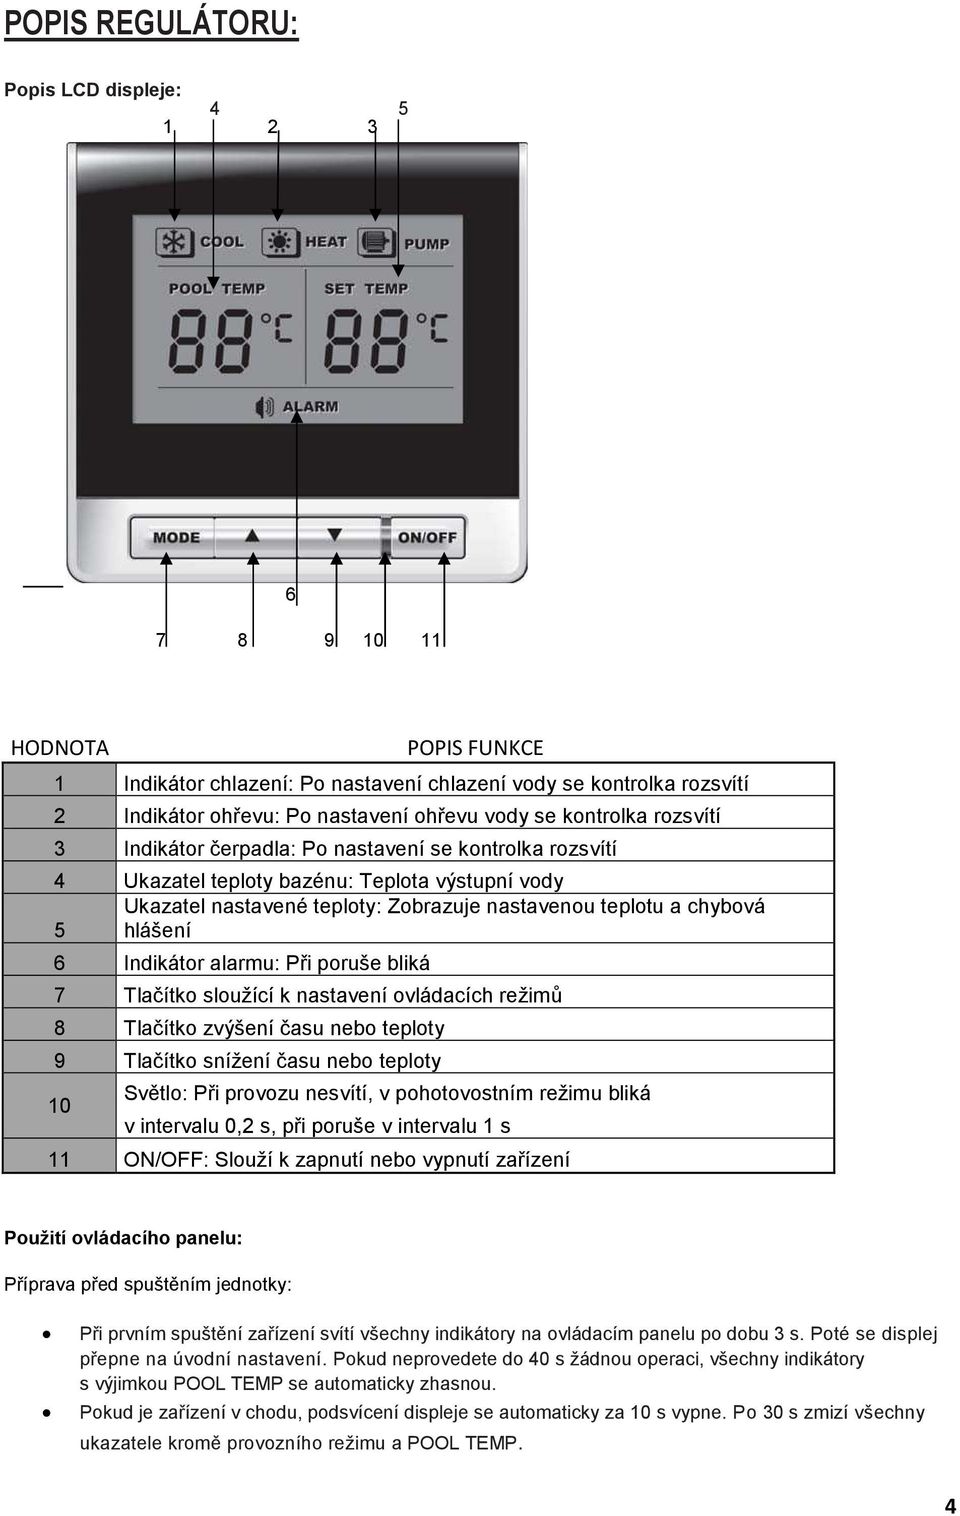 hlášení 6 Indikátor alarmu: Při poruše bliká 7 Tlačítko sloužící k nastavení ovládacích režimů 8 Tlačítko zvýšení času nebo teploty 9 Tlačítko snížení času nebo teploty 10 Světlo: Při provozu